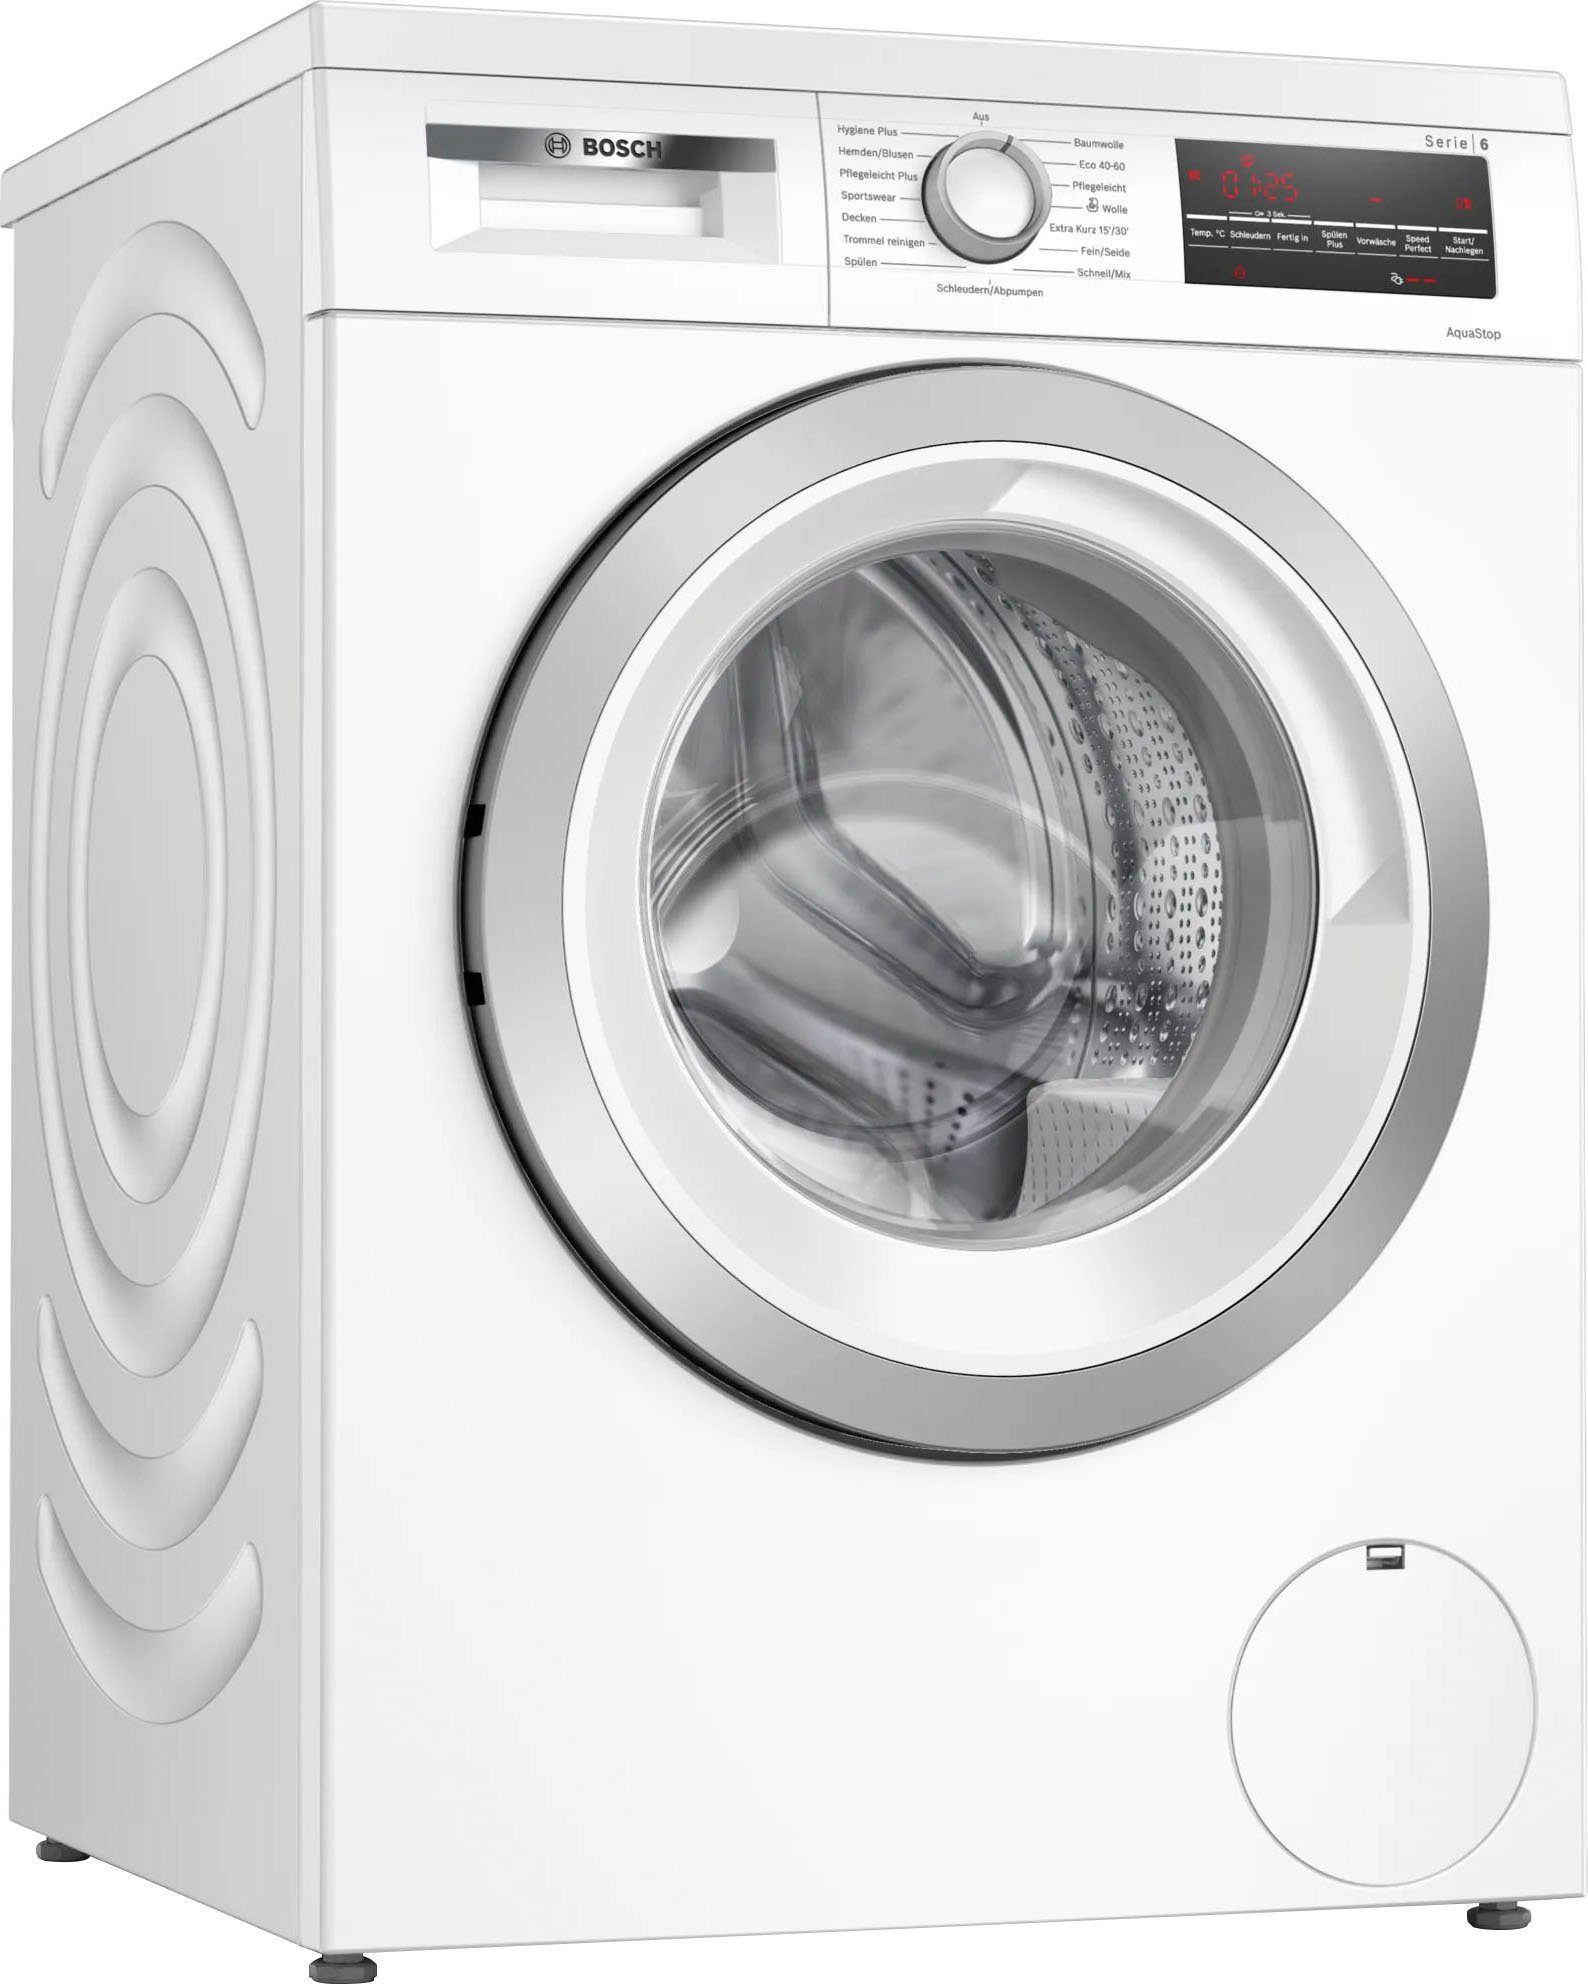 BOSCH kg, ezient 8 WUU28T70, Vario dank Waschen Waschmaschine Trommel: einzigartiger und U/min, schonend 1400